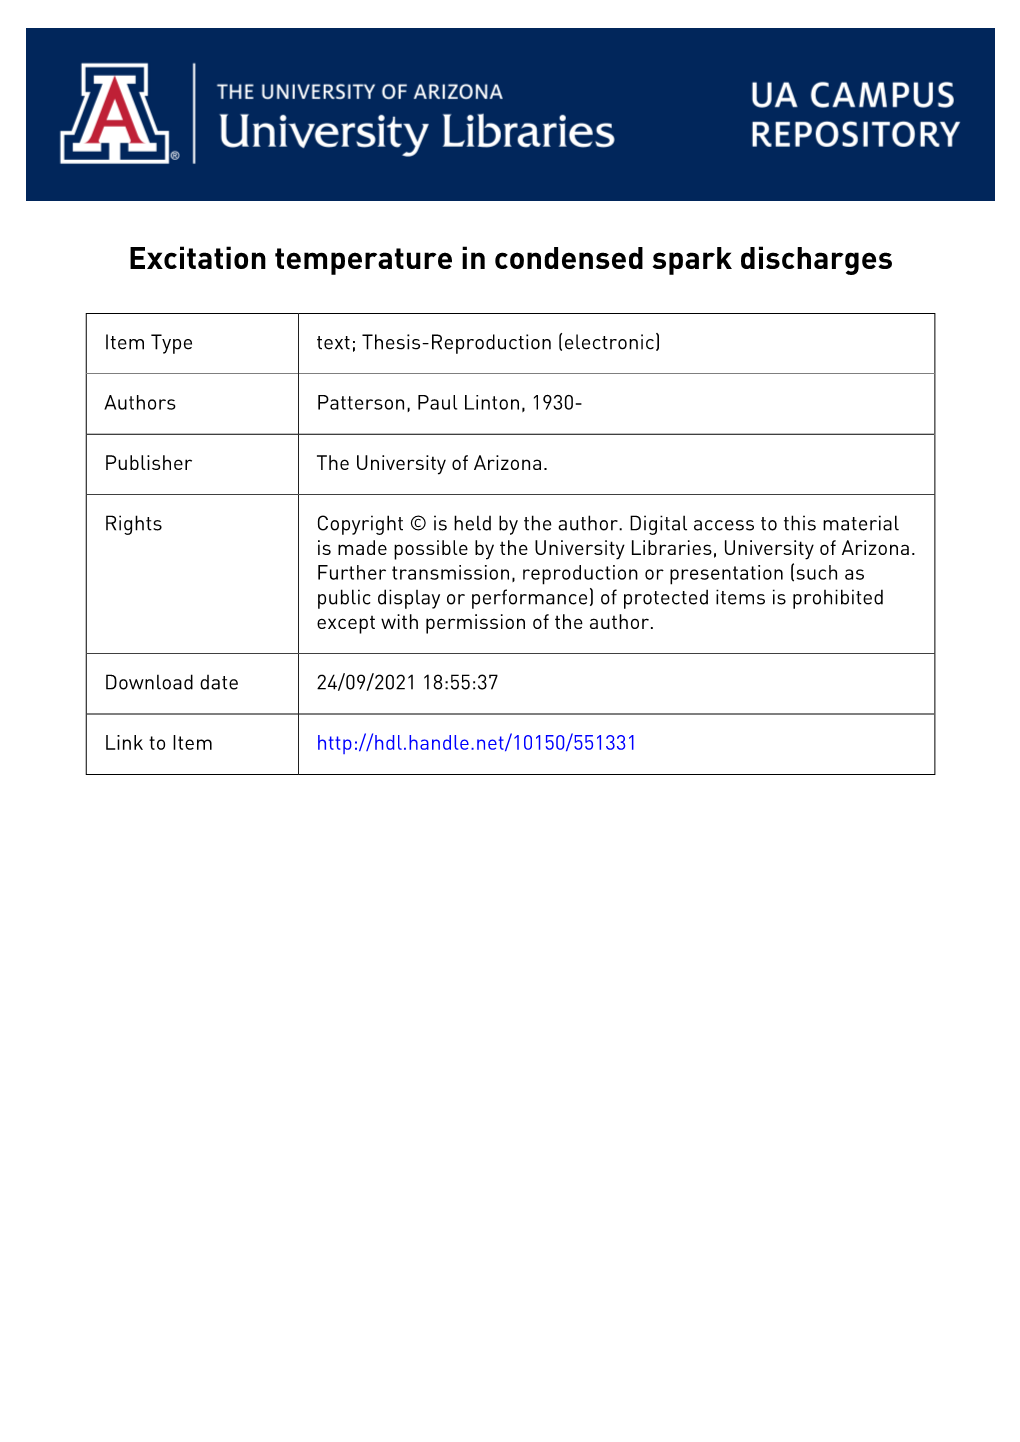 Excitation Temperature in Condensed Spark Discharges